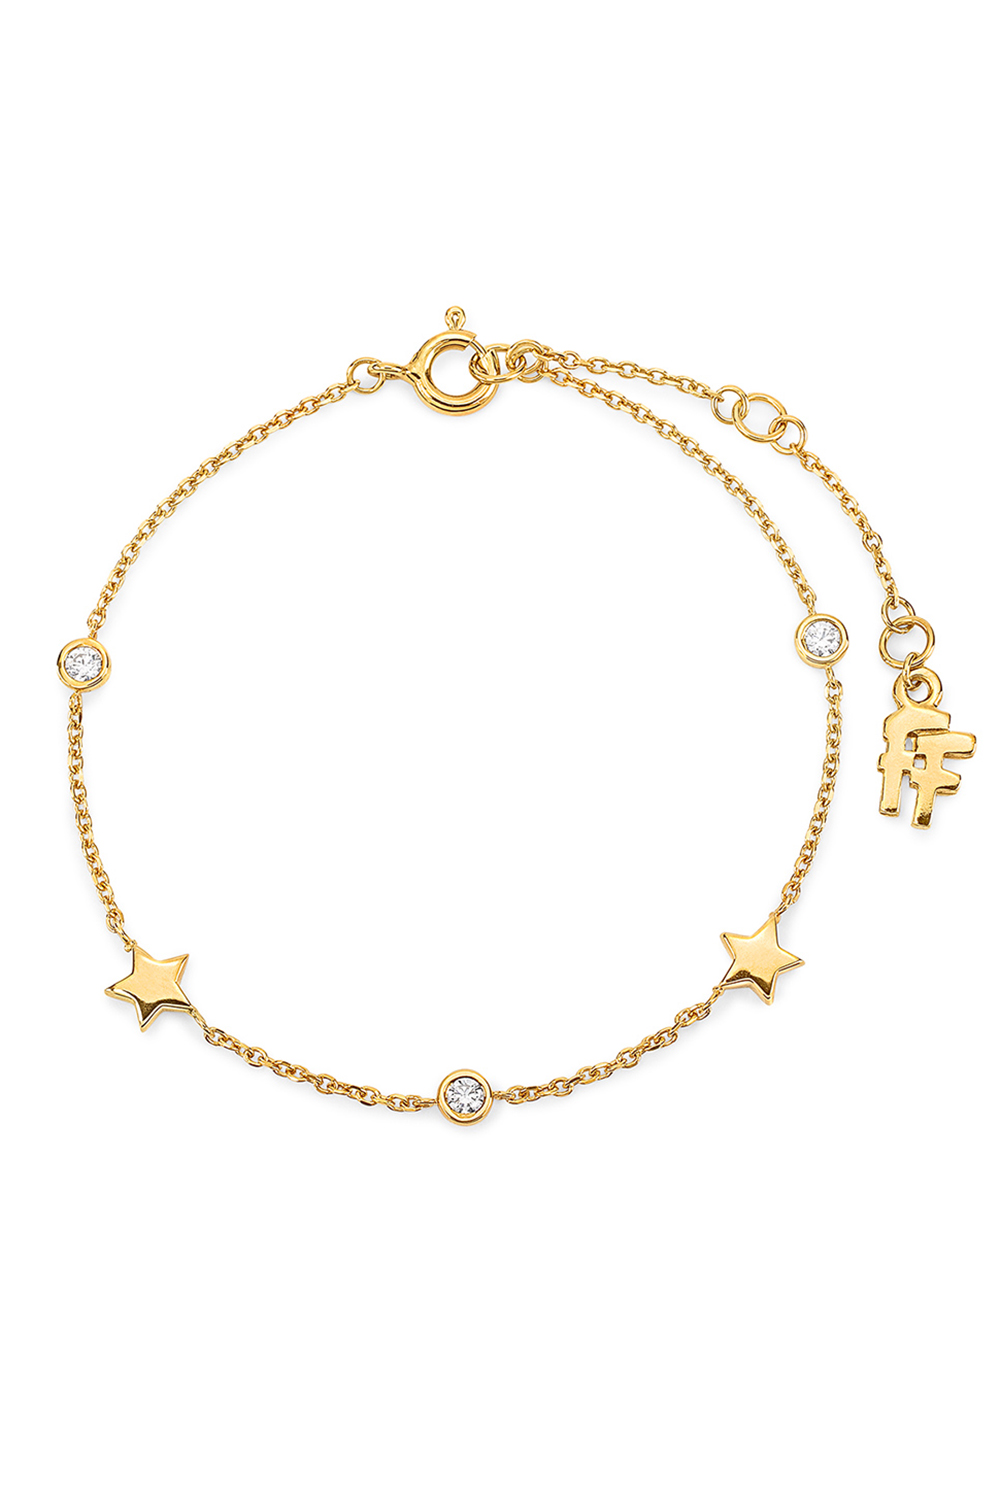 Γυναικεία/Αξεσουάρ/Κοσμήματα/Βραχιόλια FOLLI FOLLIE - Γυναικείο ασημένιο βραχιόλι FOLLI FOLLIE WISHING ON χρυσό